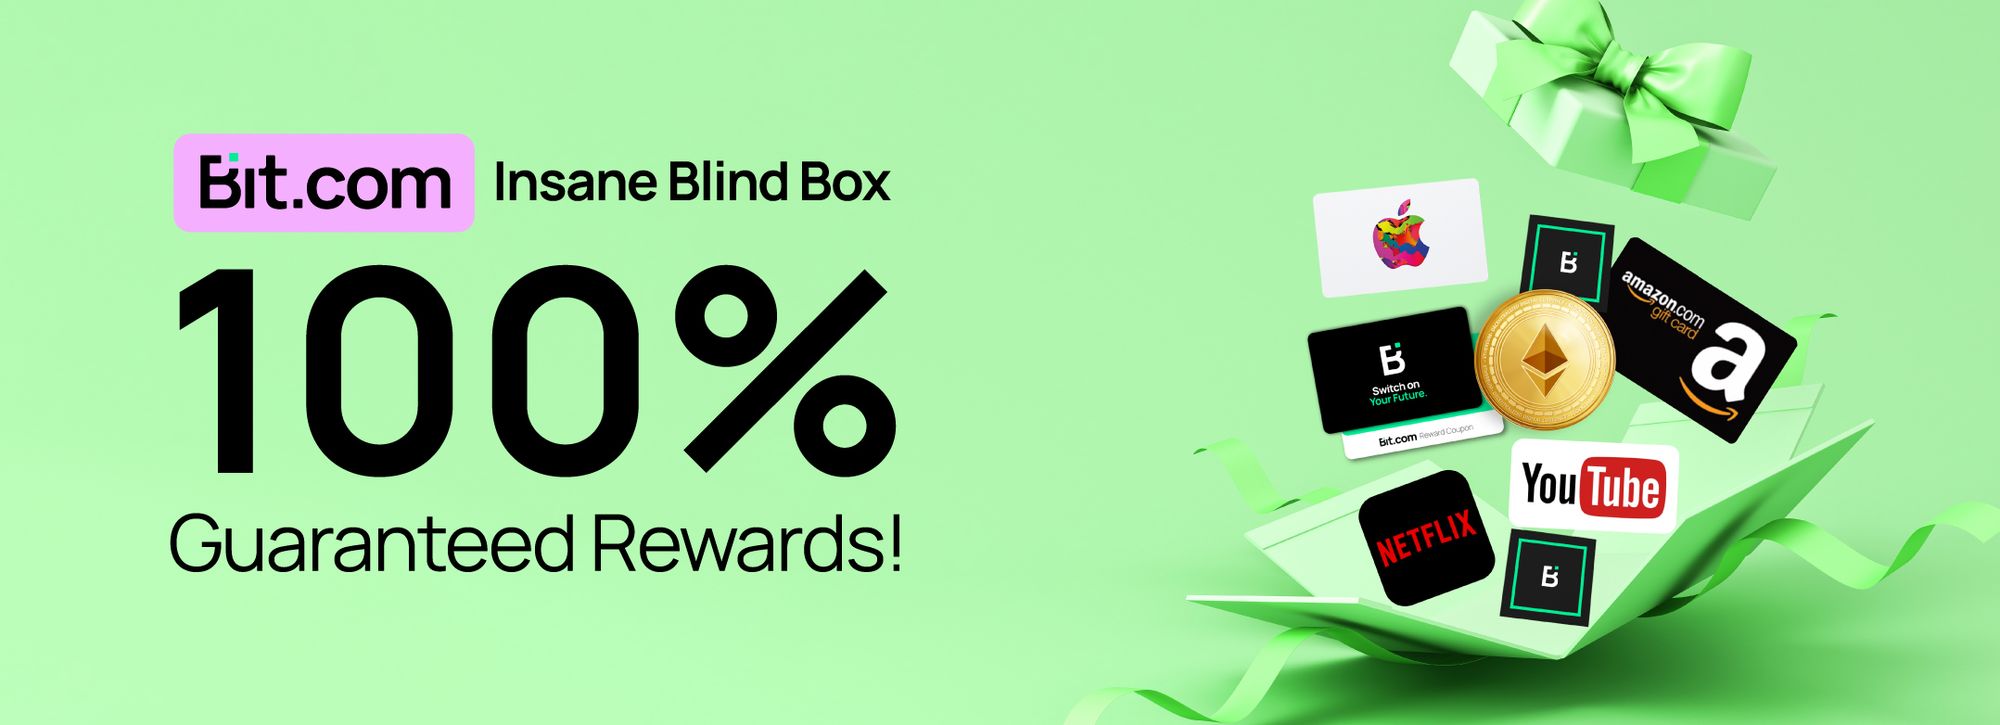 bit.com insane blind box